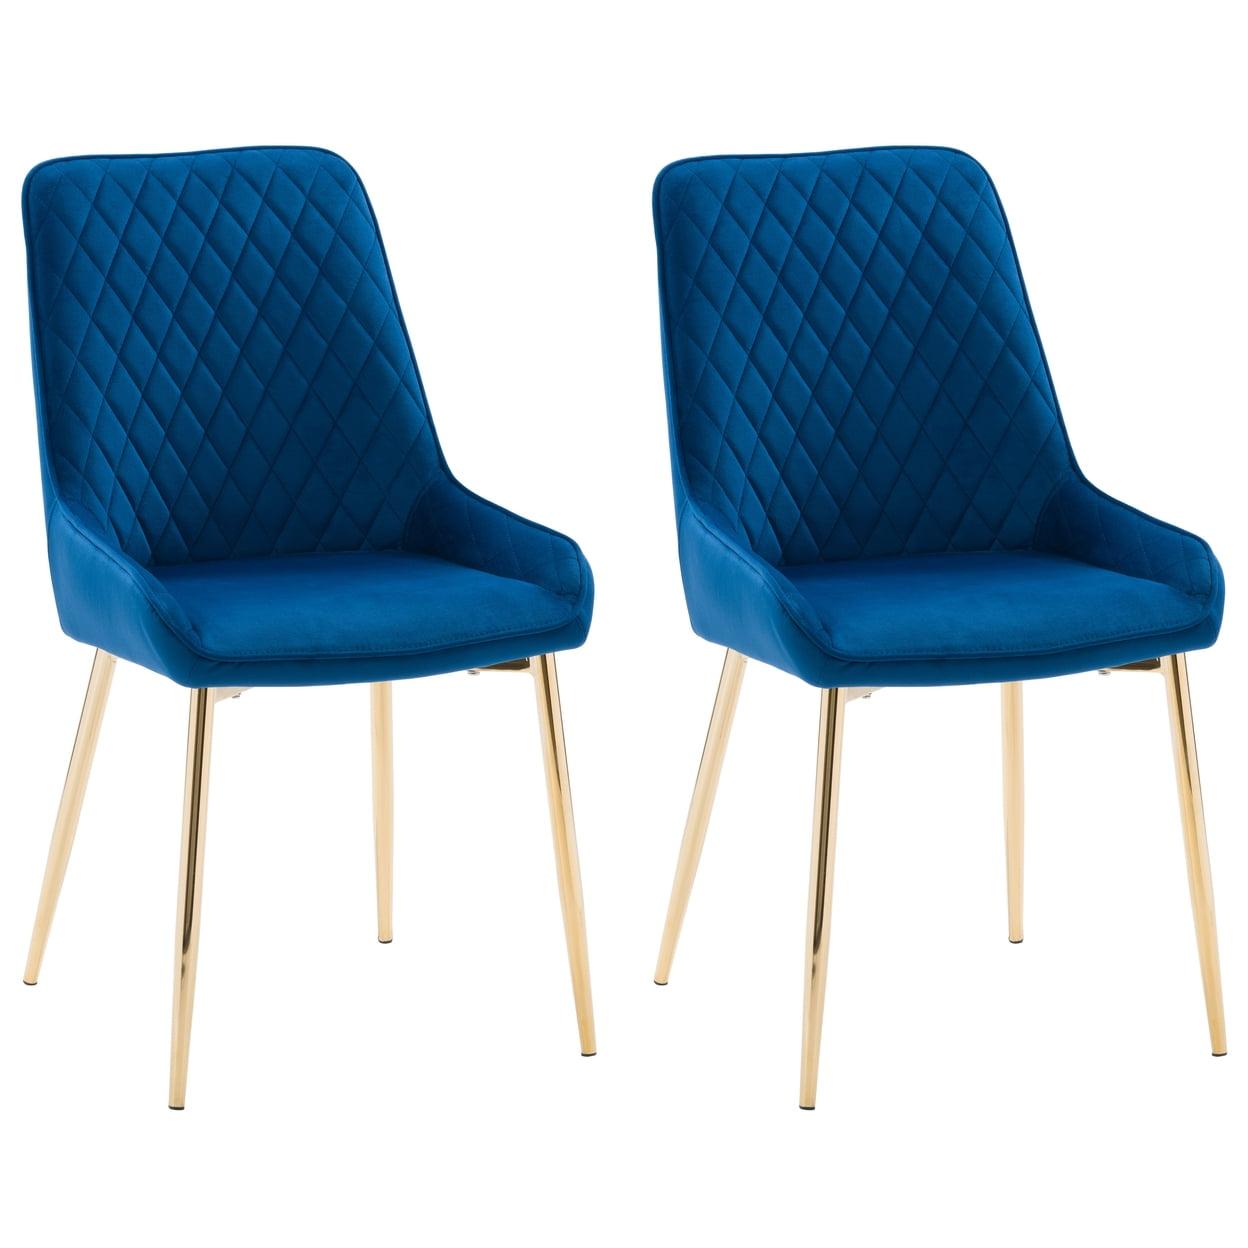 Navy Blue Velvet Diamond Tufted Side Chair with Gold Legs